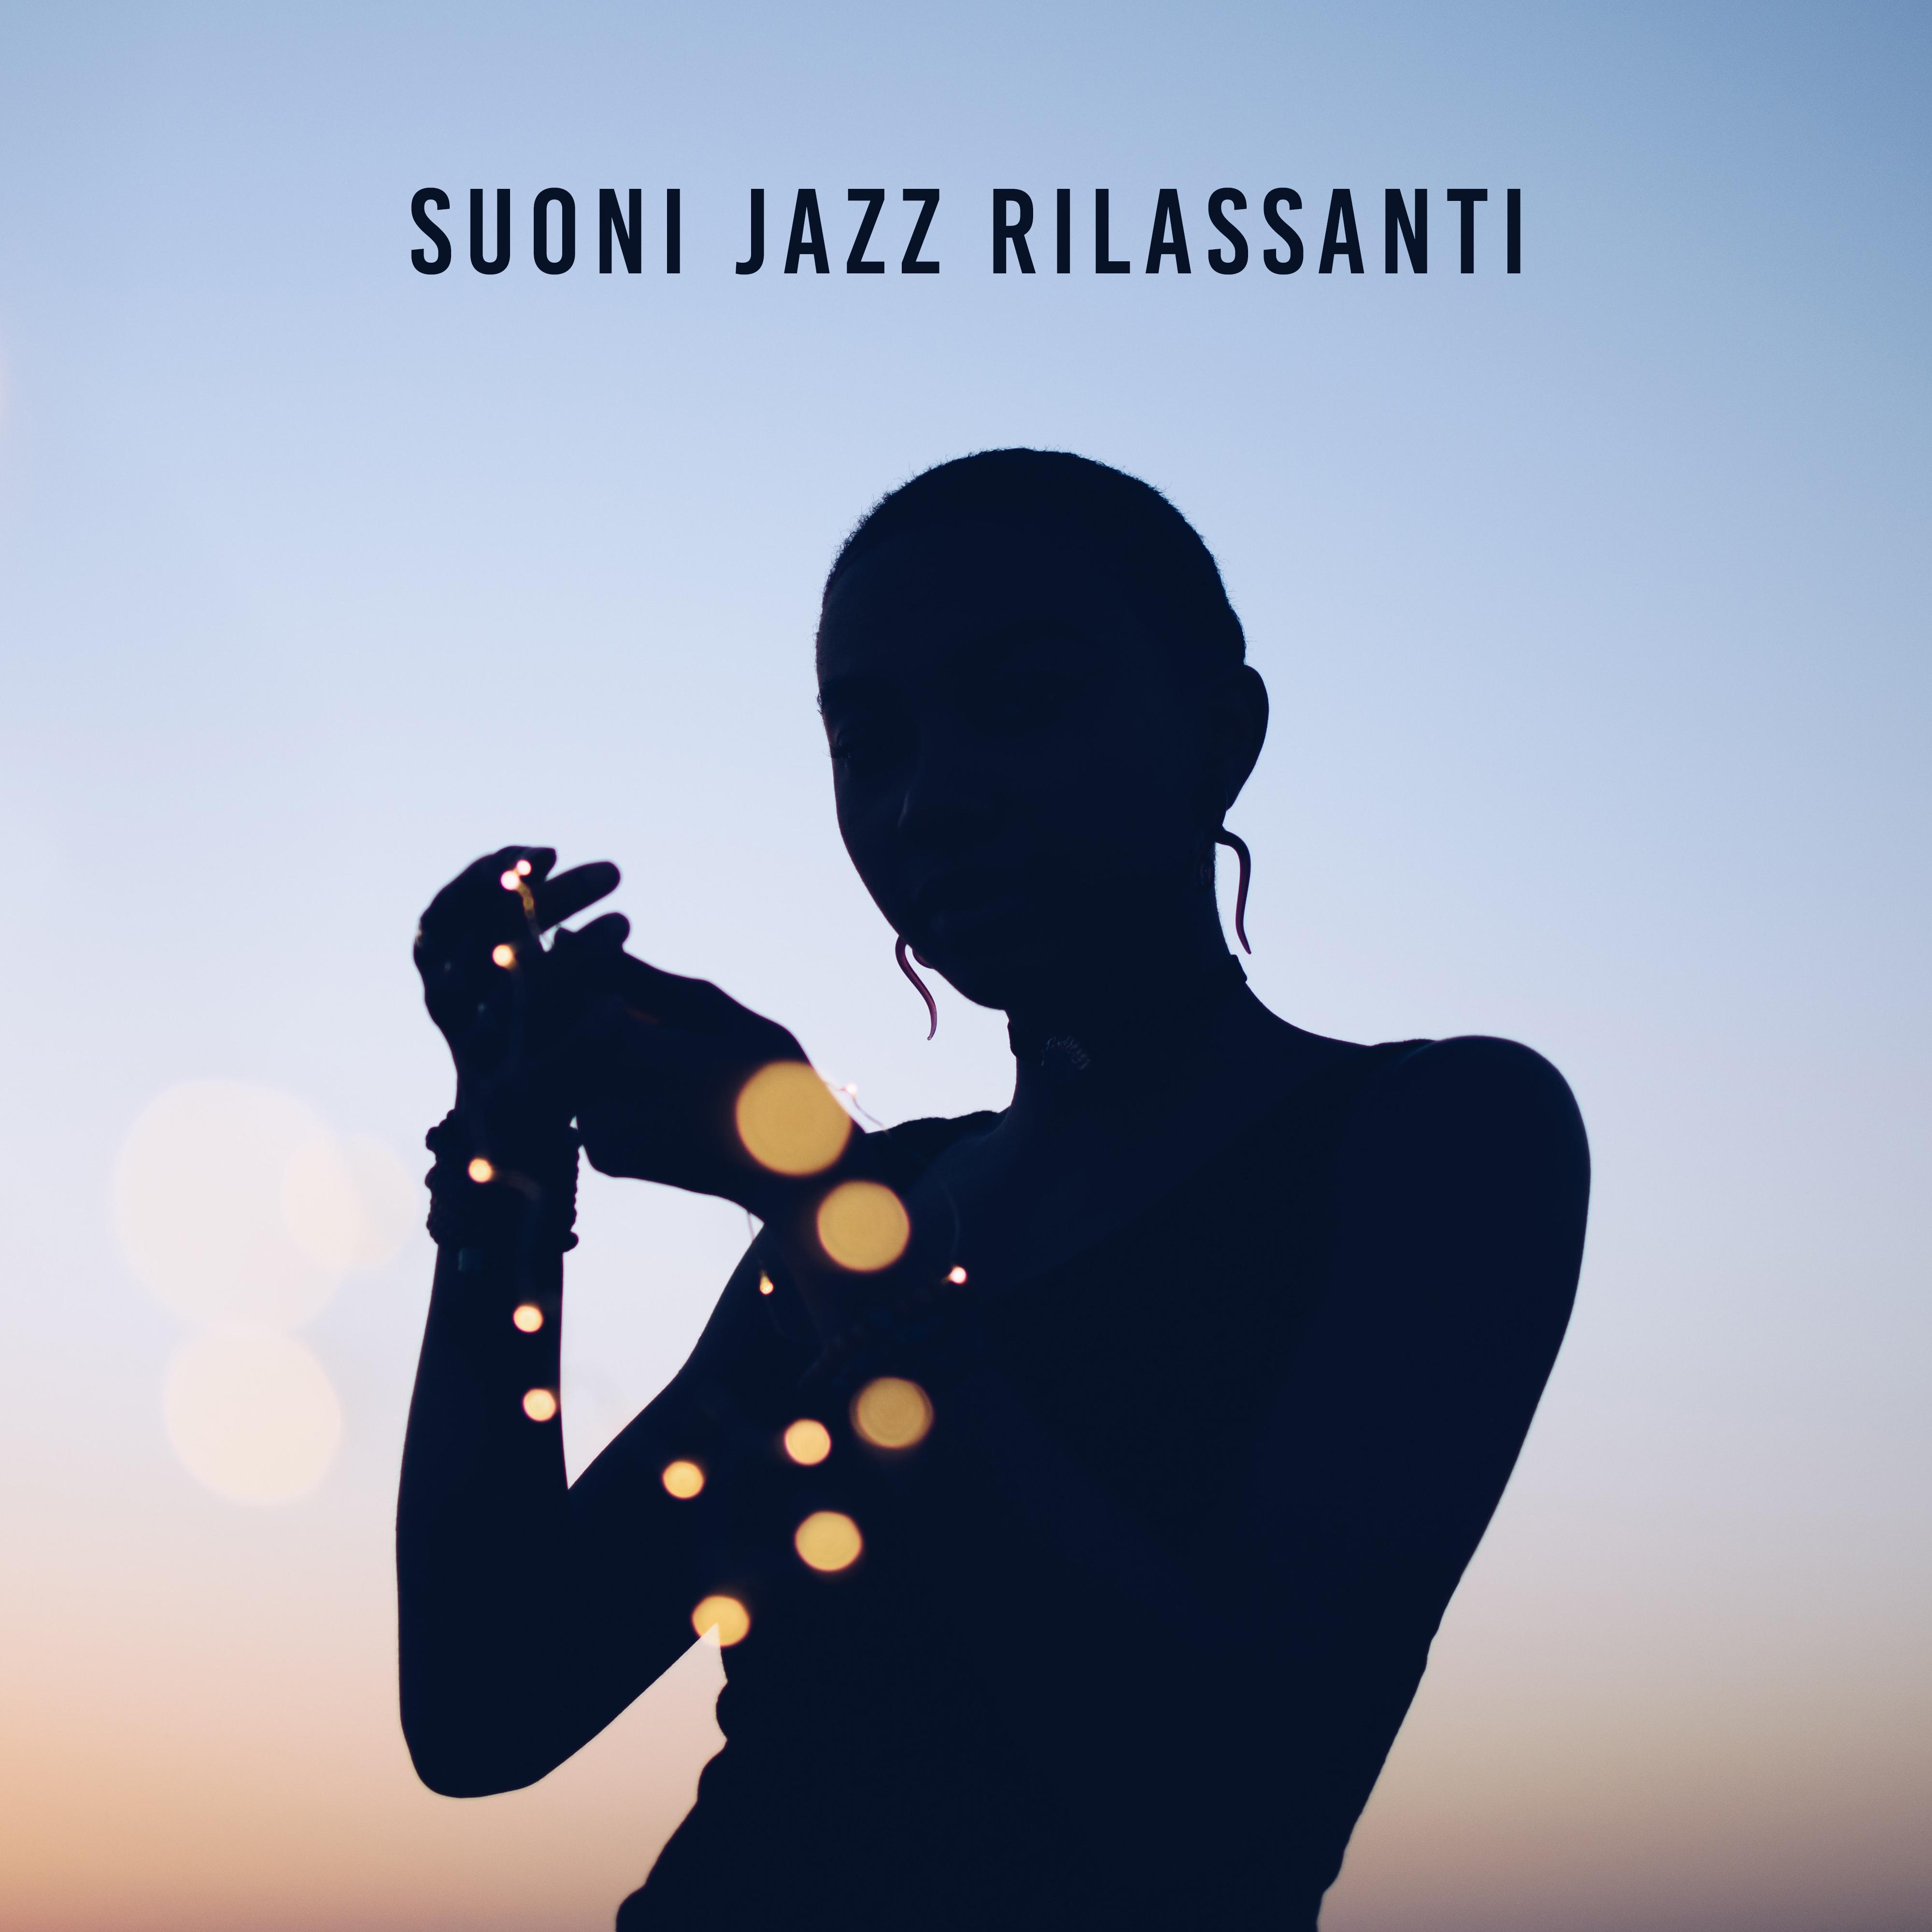 Suoni Jazz Rilassanti - le Migliori Composizioni Jazz per il Relax e il Riposo